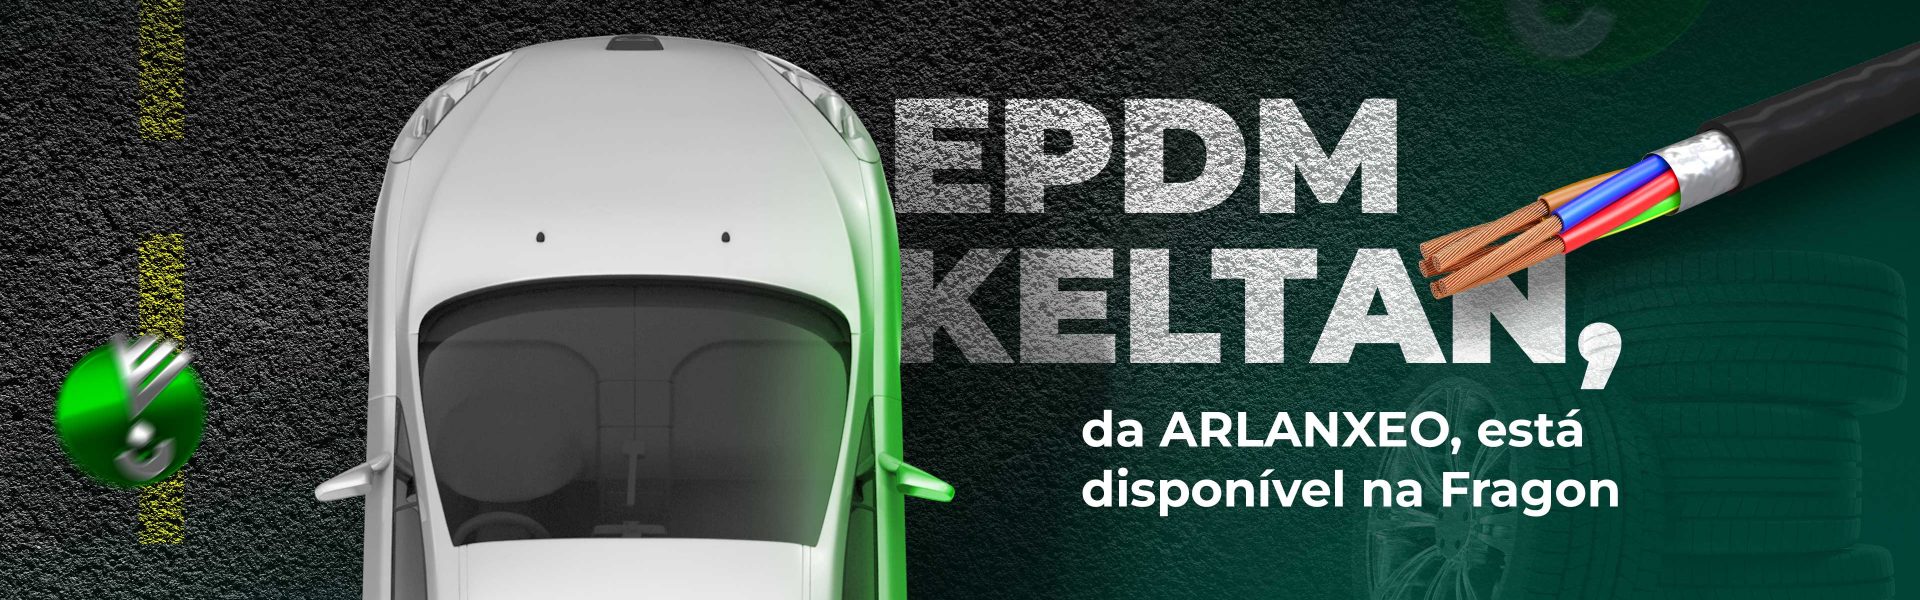 EPDM Keltan, da ARLANXEO, está disponível na Fragon